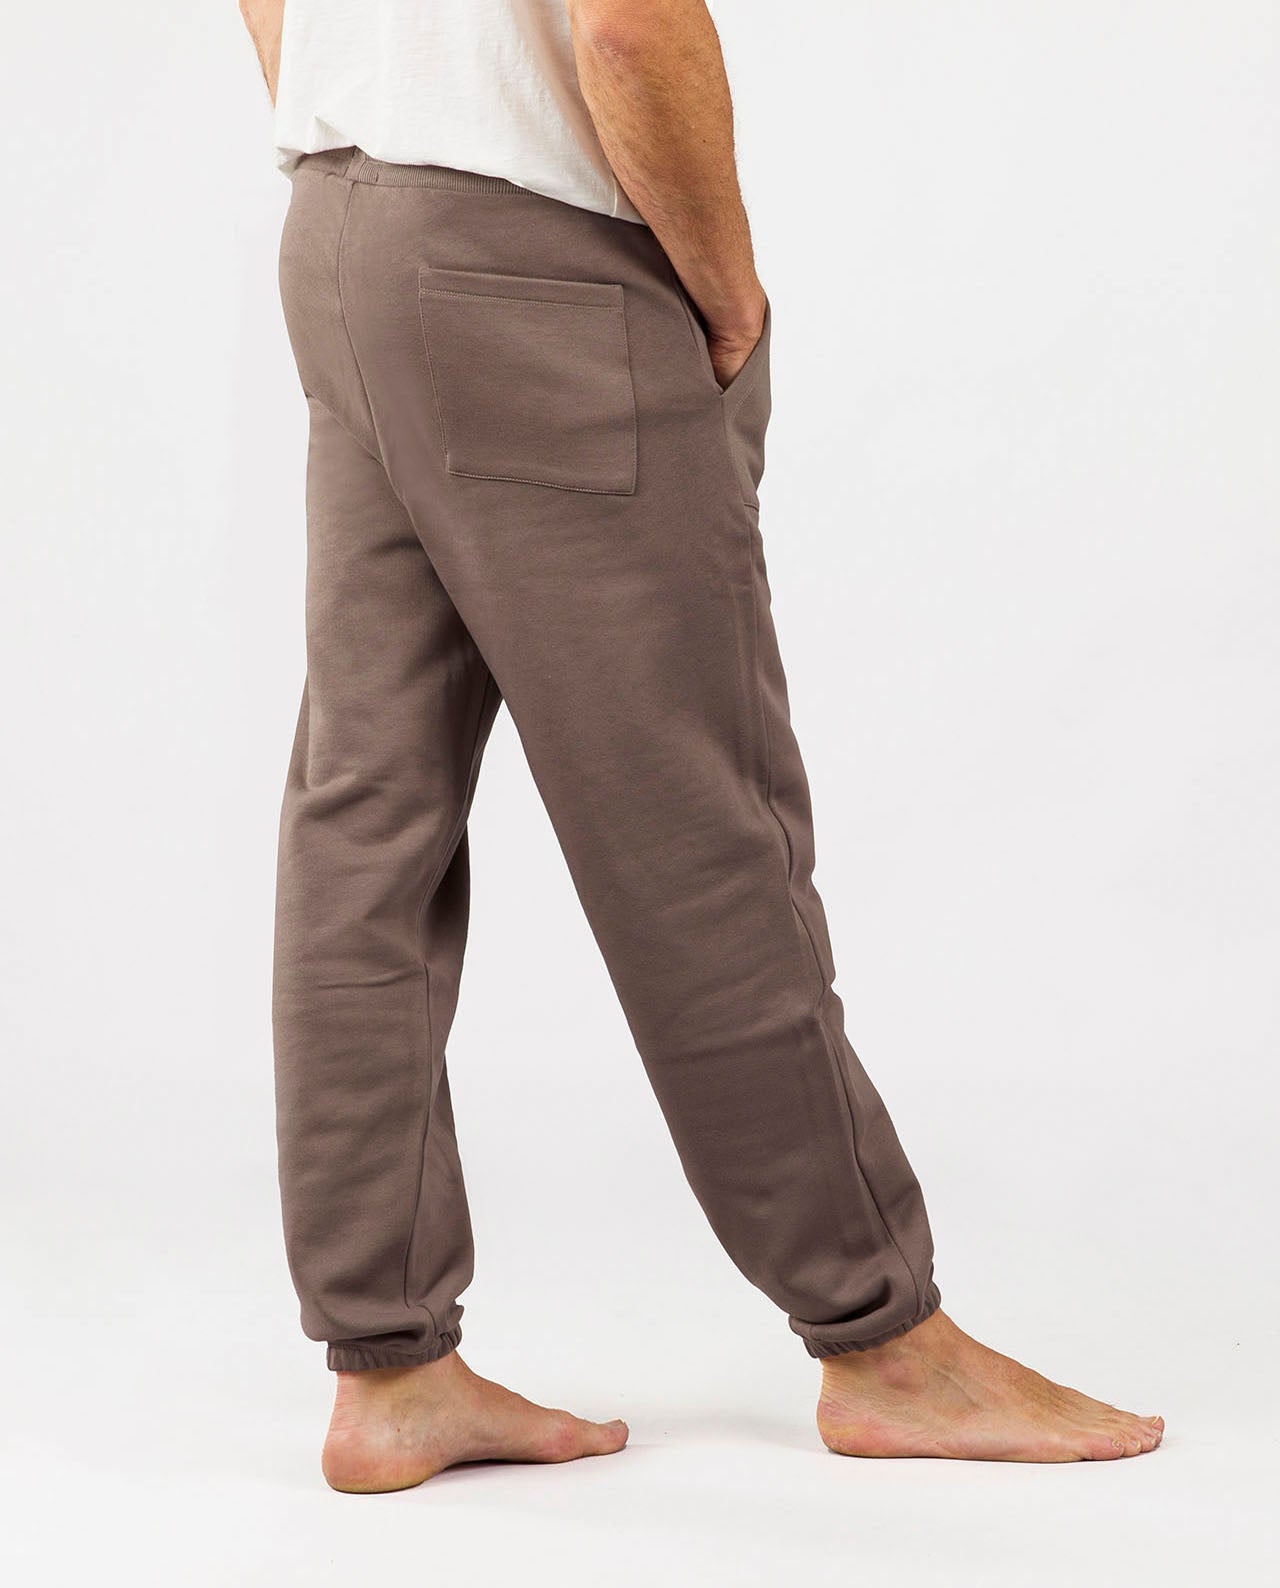 marché commun noyoco pantalon jogging homme coton biologique éco-responsable éthique fabriqué en Europe taupe